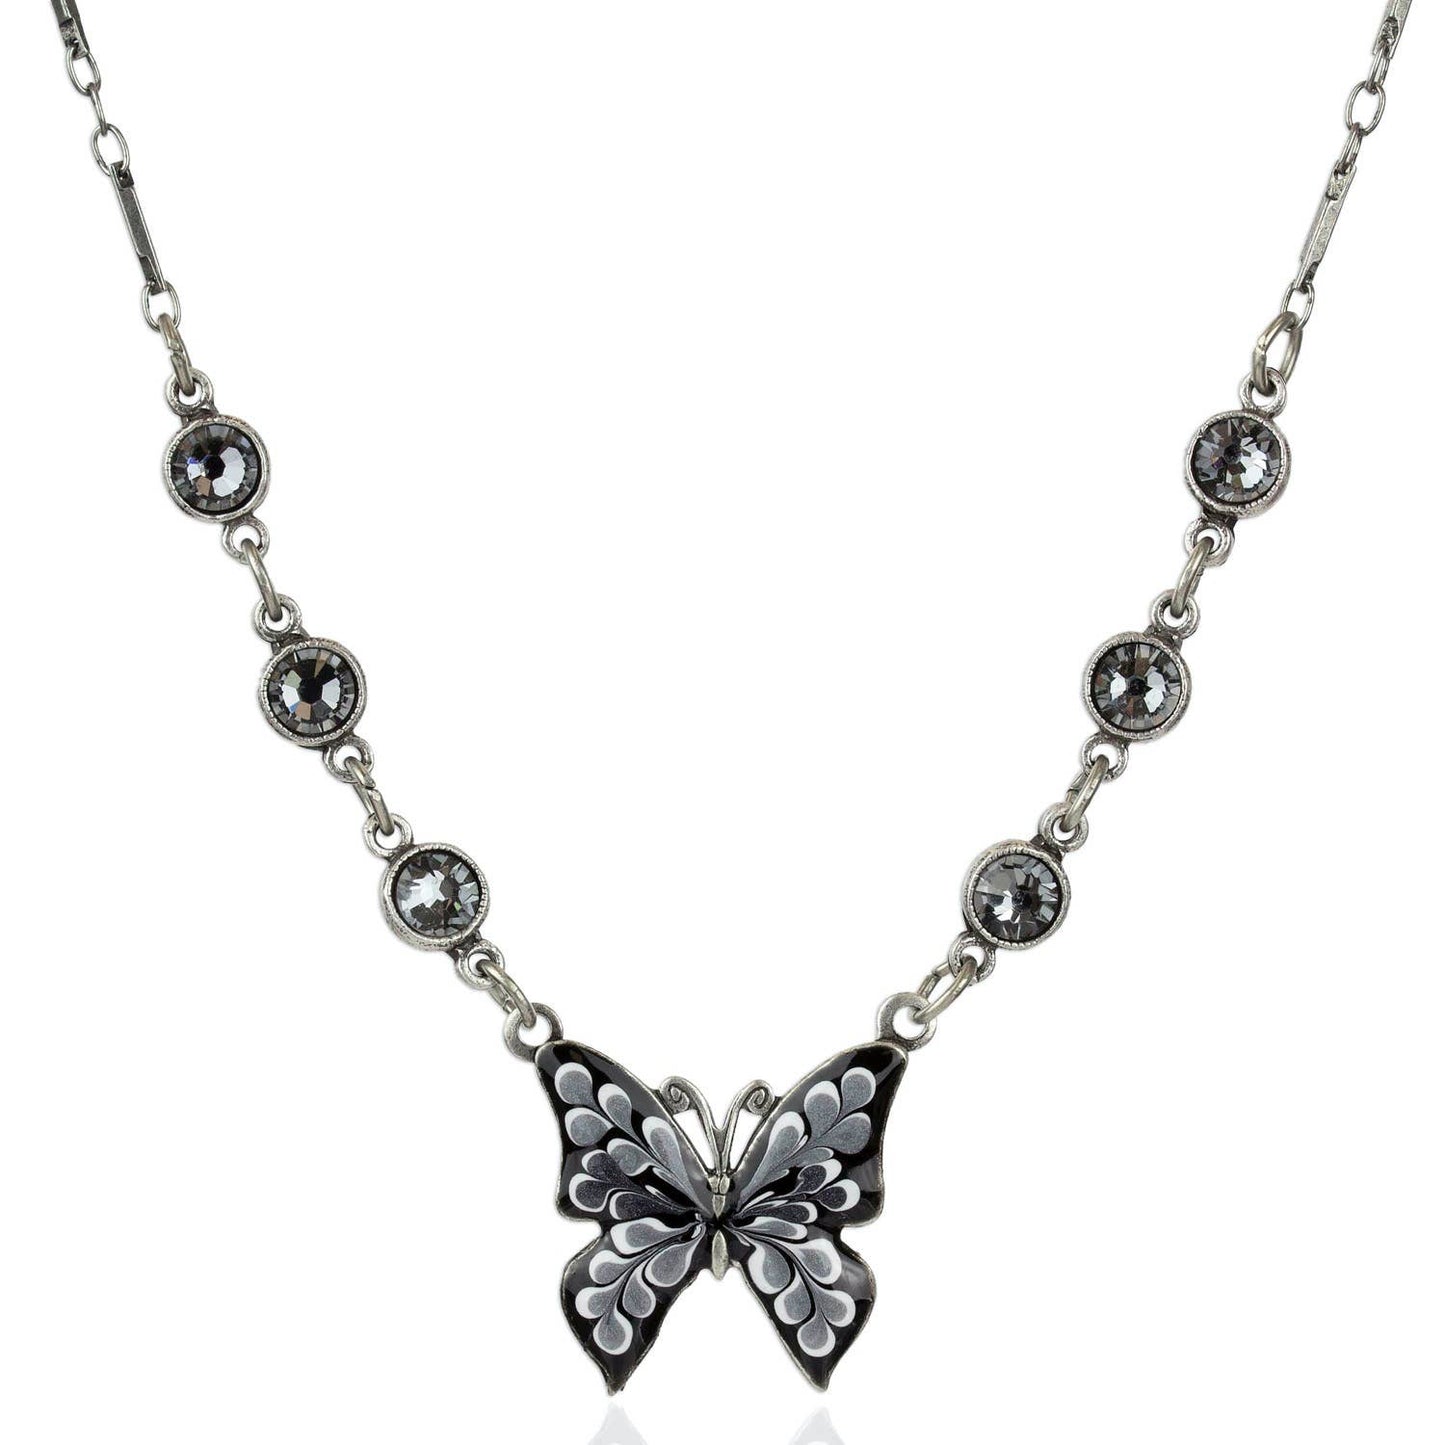 Nymphiana Butterfly Necklace